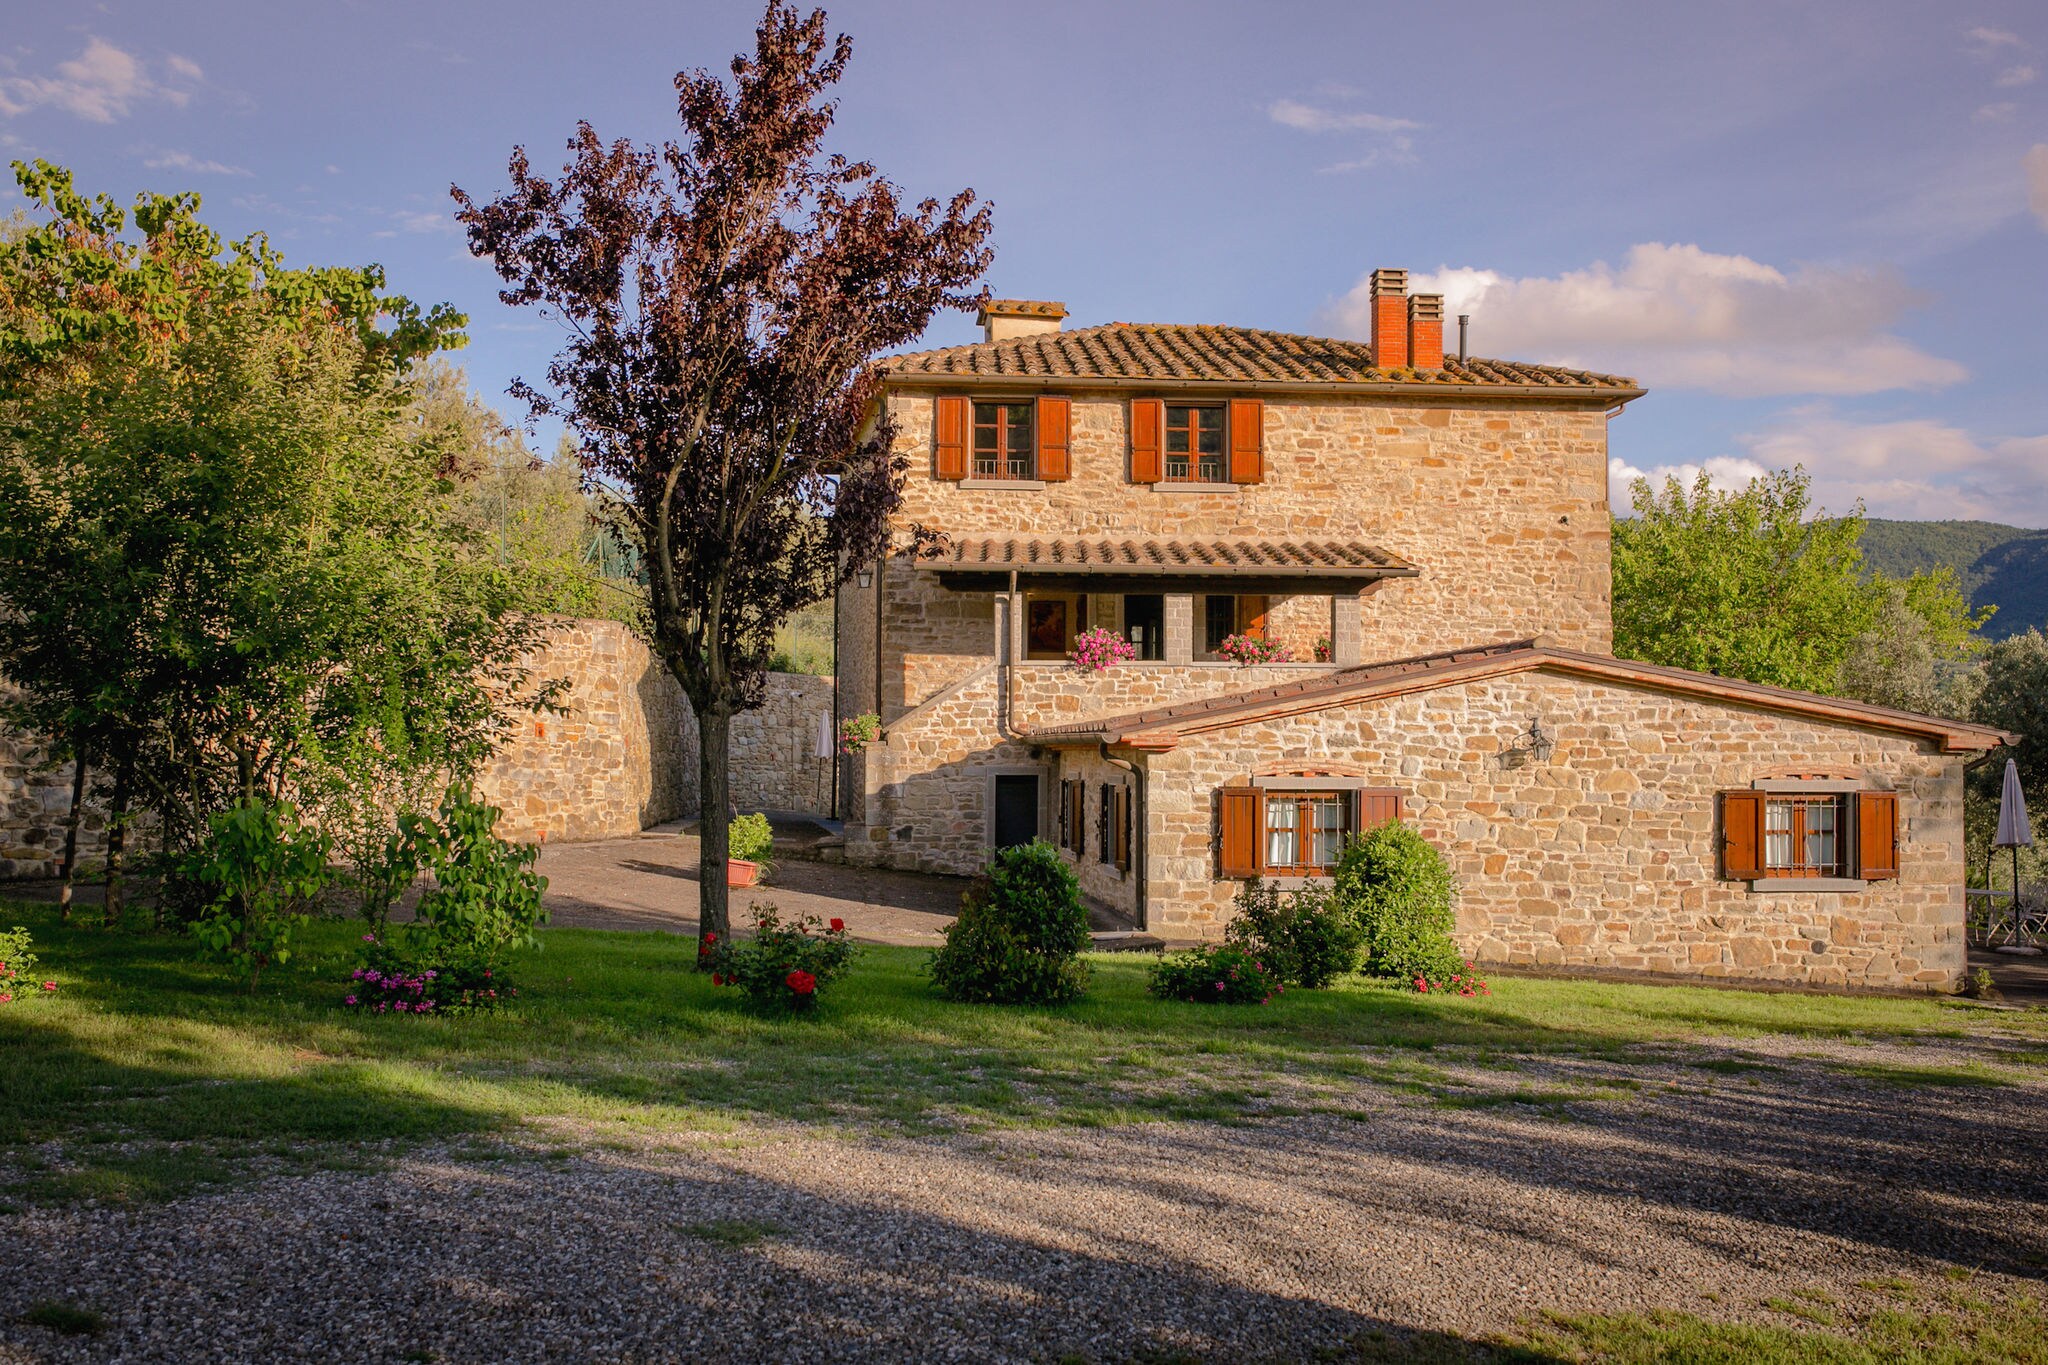 Spacious Villa with Private Pool in Castiglion Fiorentino